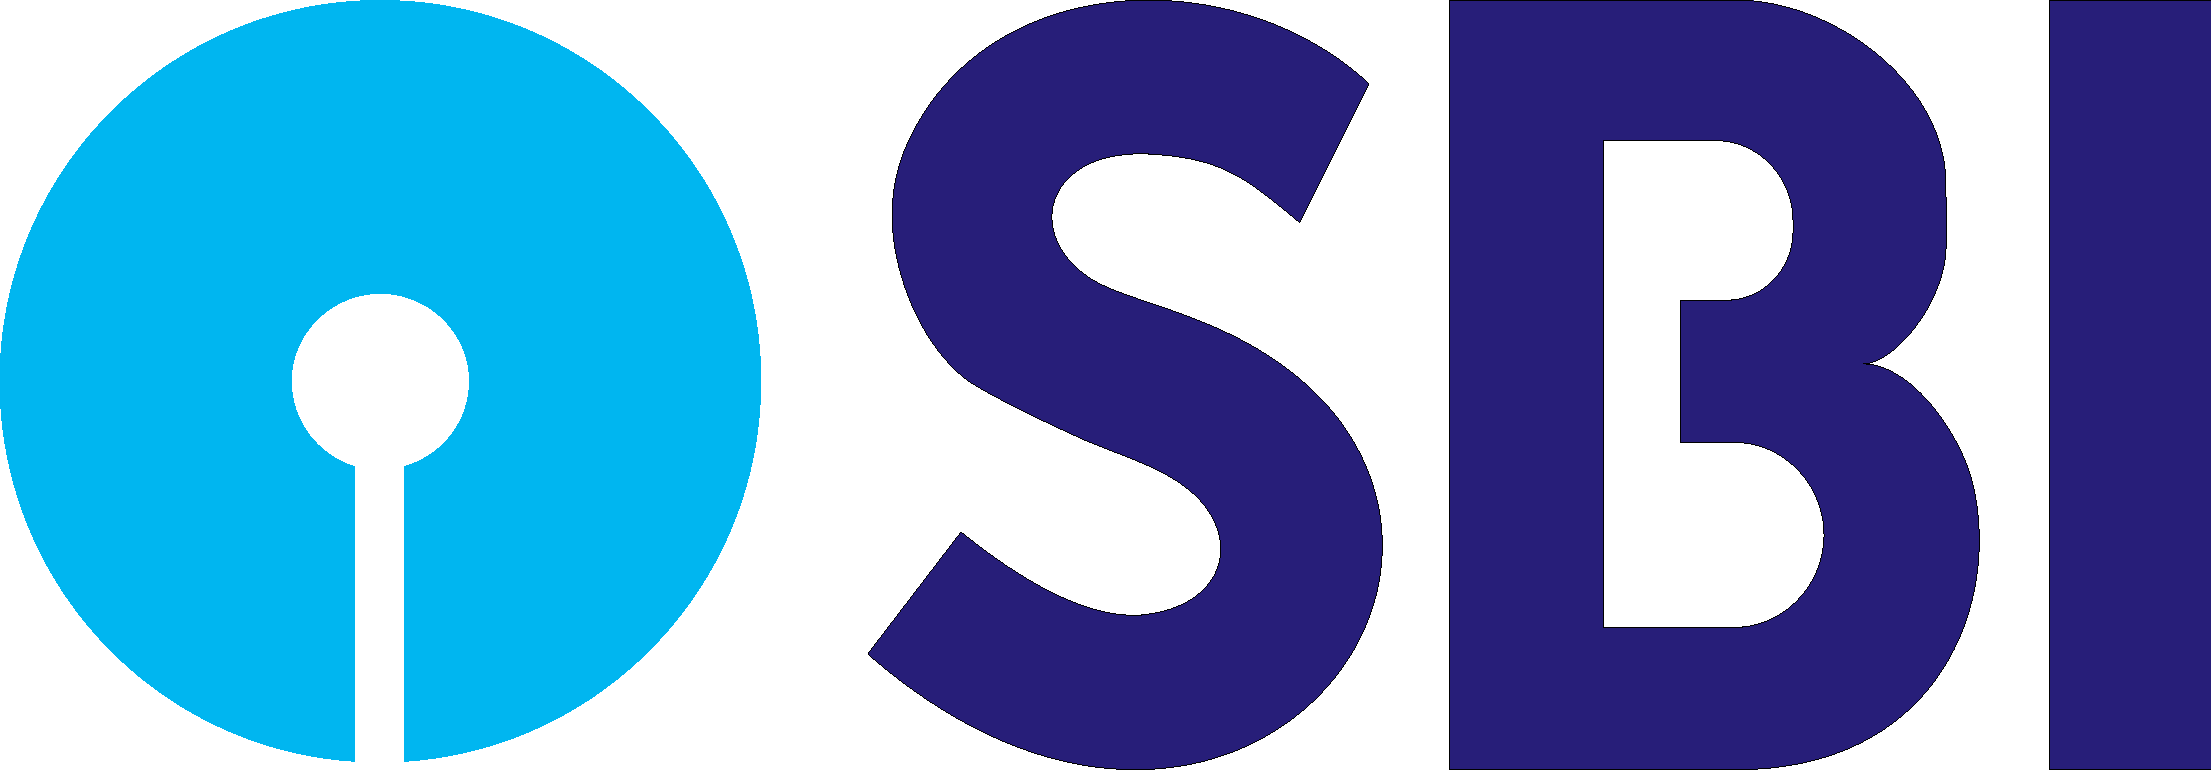 SBI Logo - sbi logo [State Bank of India Group] Vector EPS Free Download, Logo ...